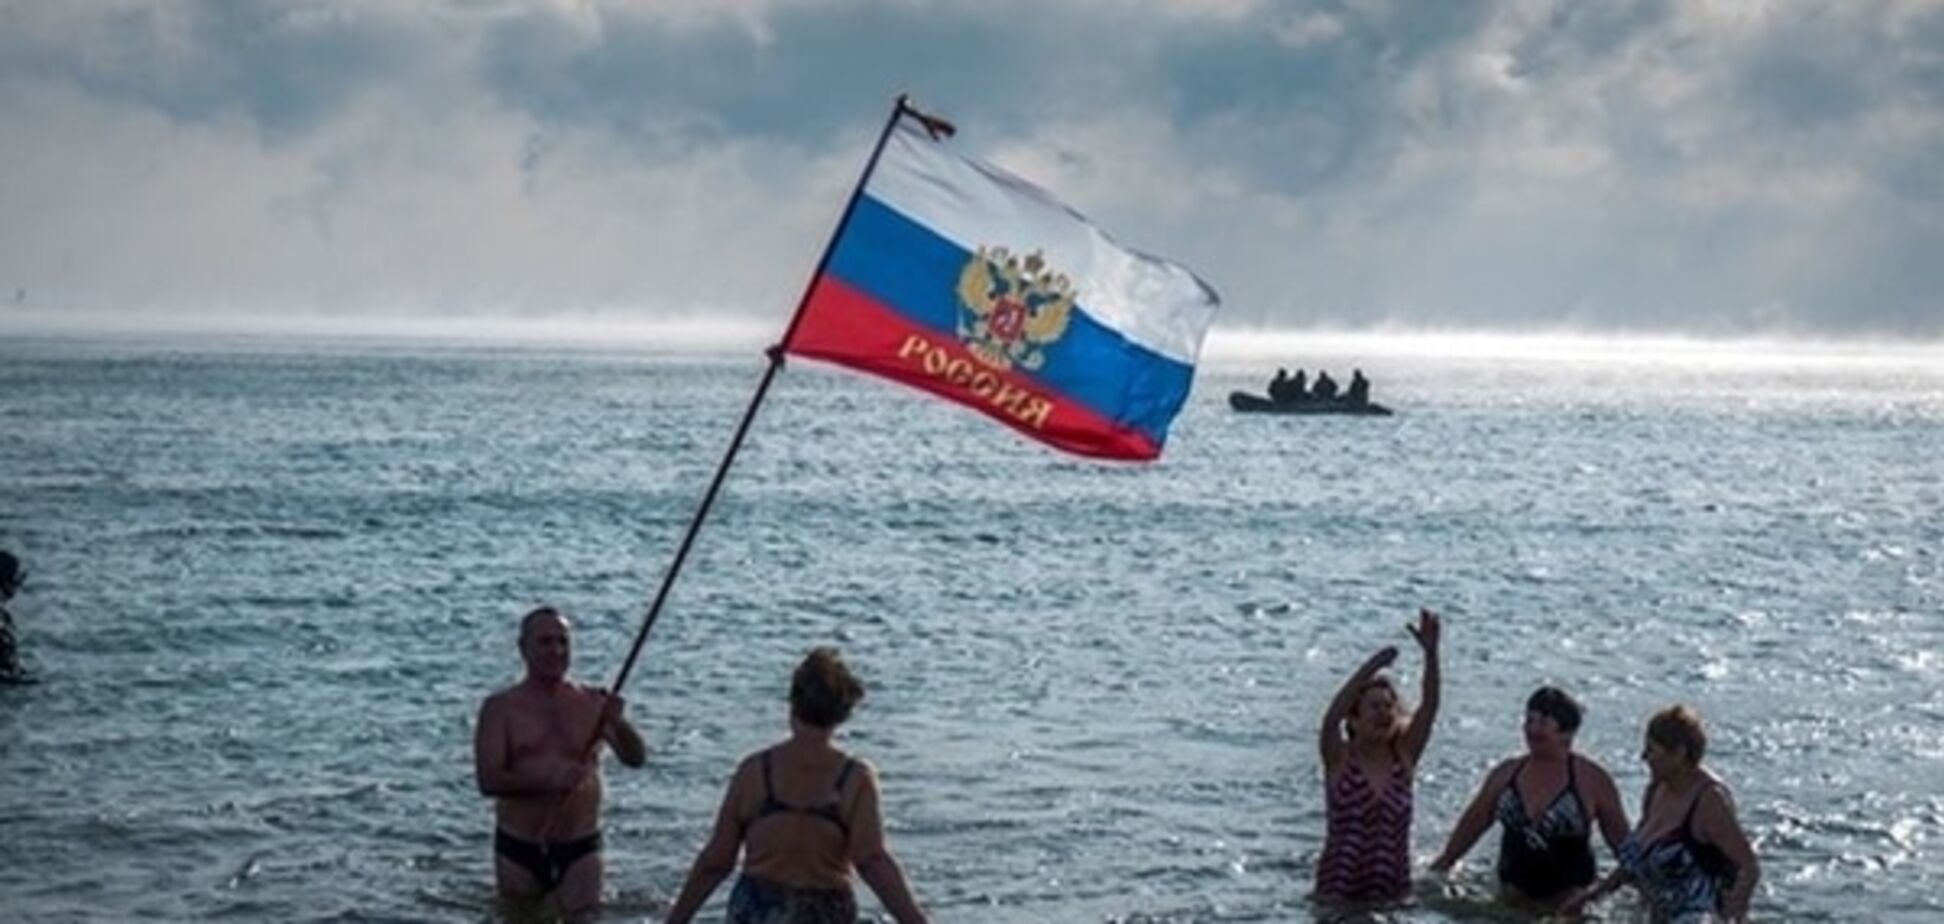 Британская газета, приглашавшая туристов в Крым, предупредила об опасности